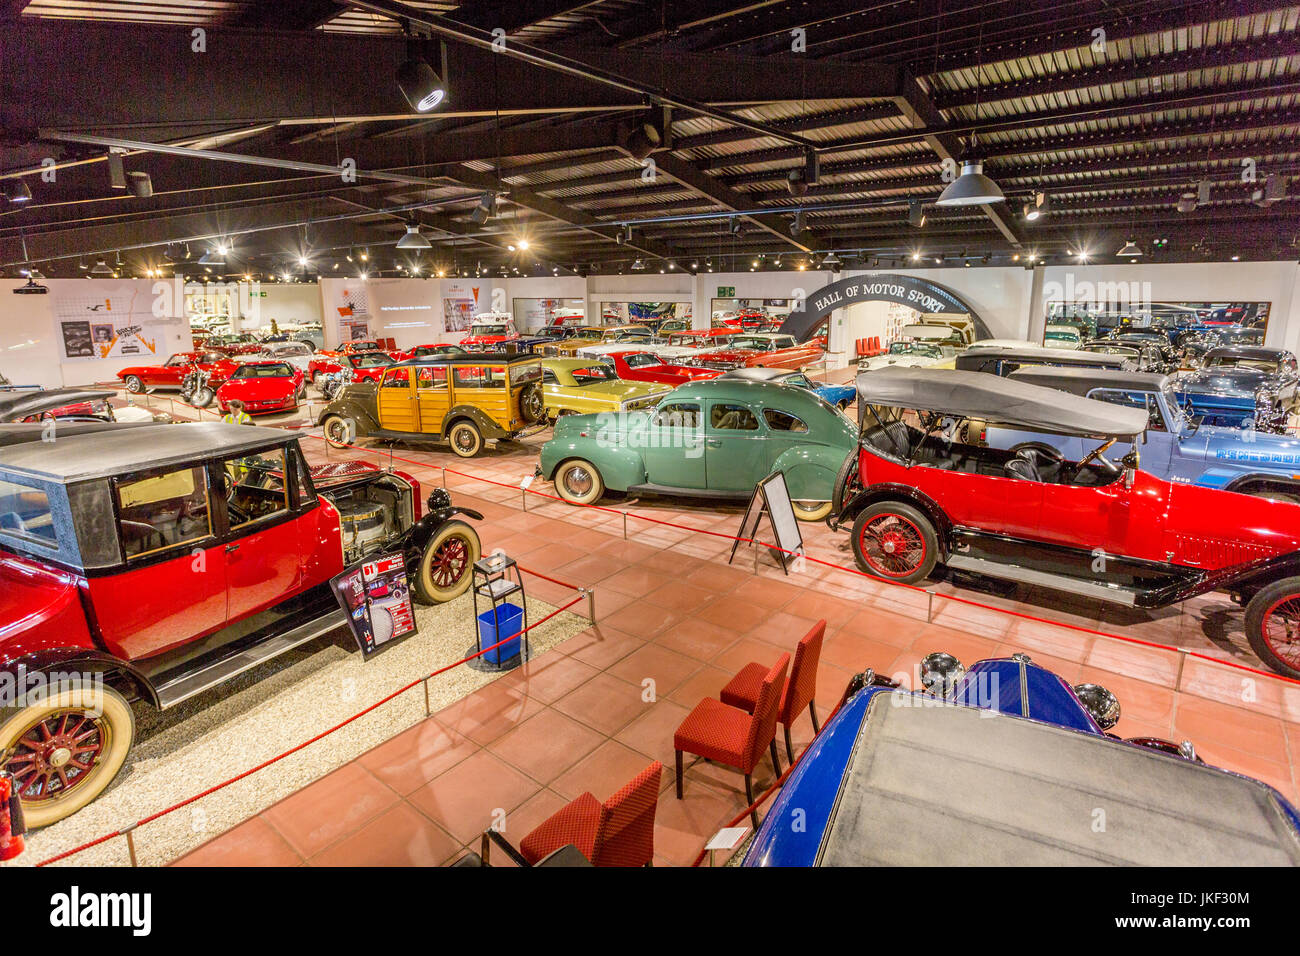 El veterano Vintage y clásicos de estilo Eduardiano Hall en el Haynes International Motor Museum, Sparkford, Somerset, Inglaterra, Reino Unido. Foto de stock